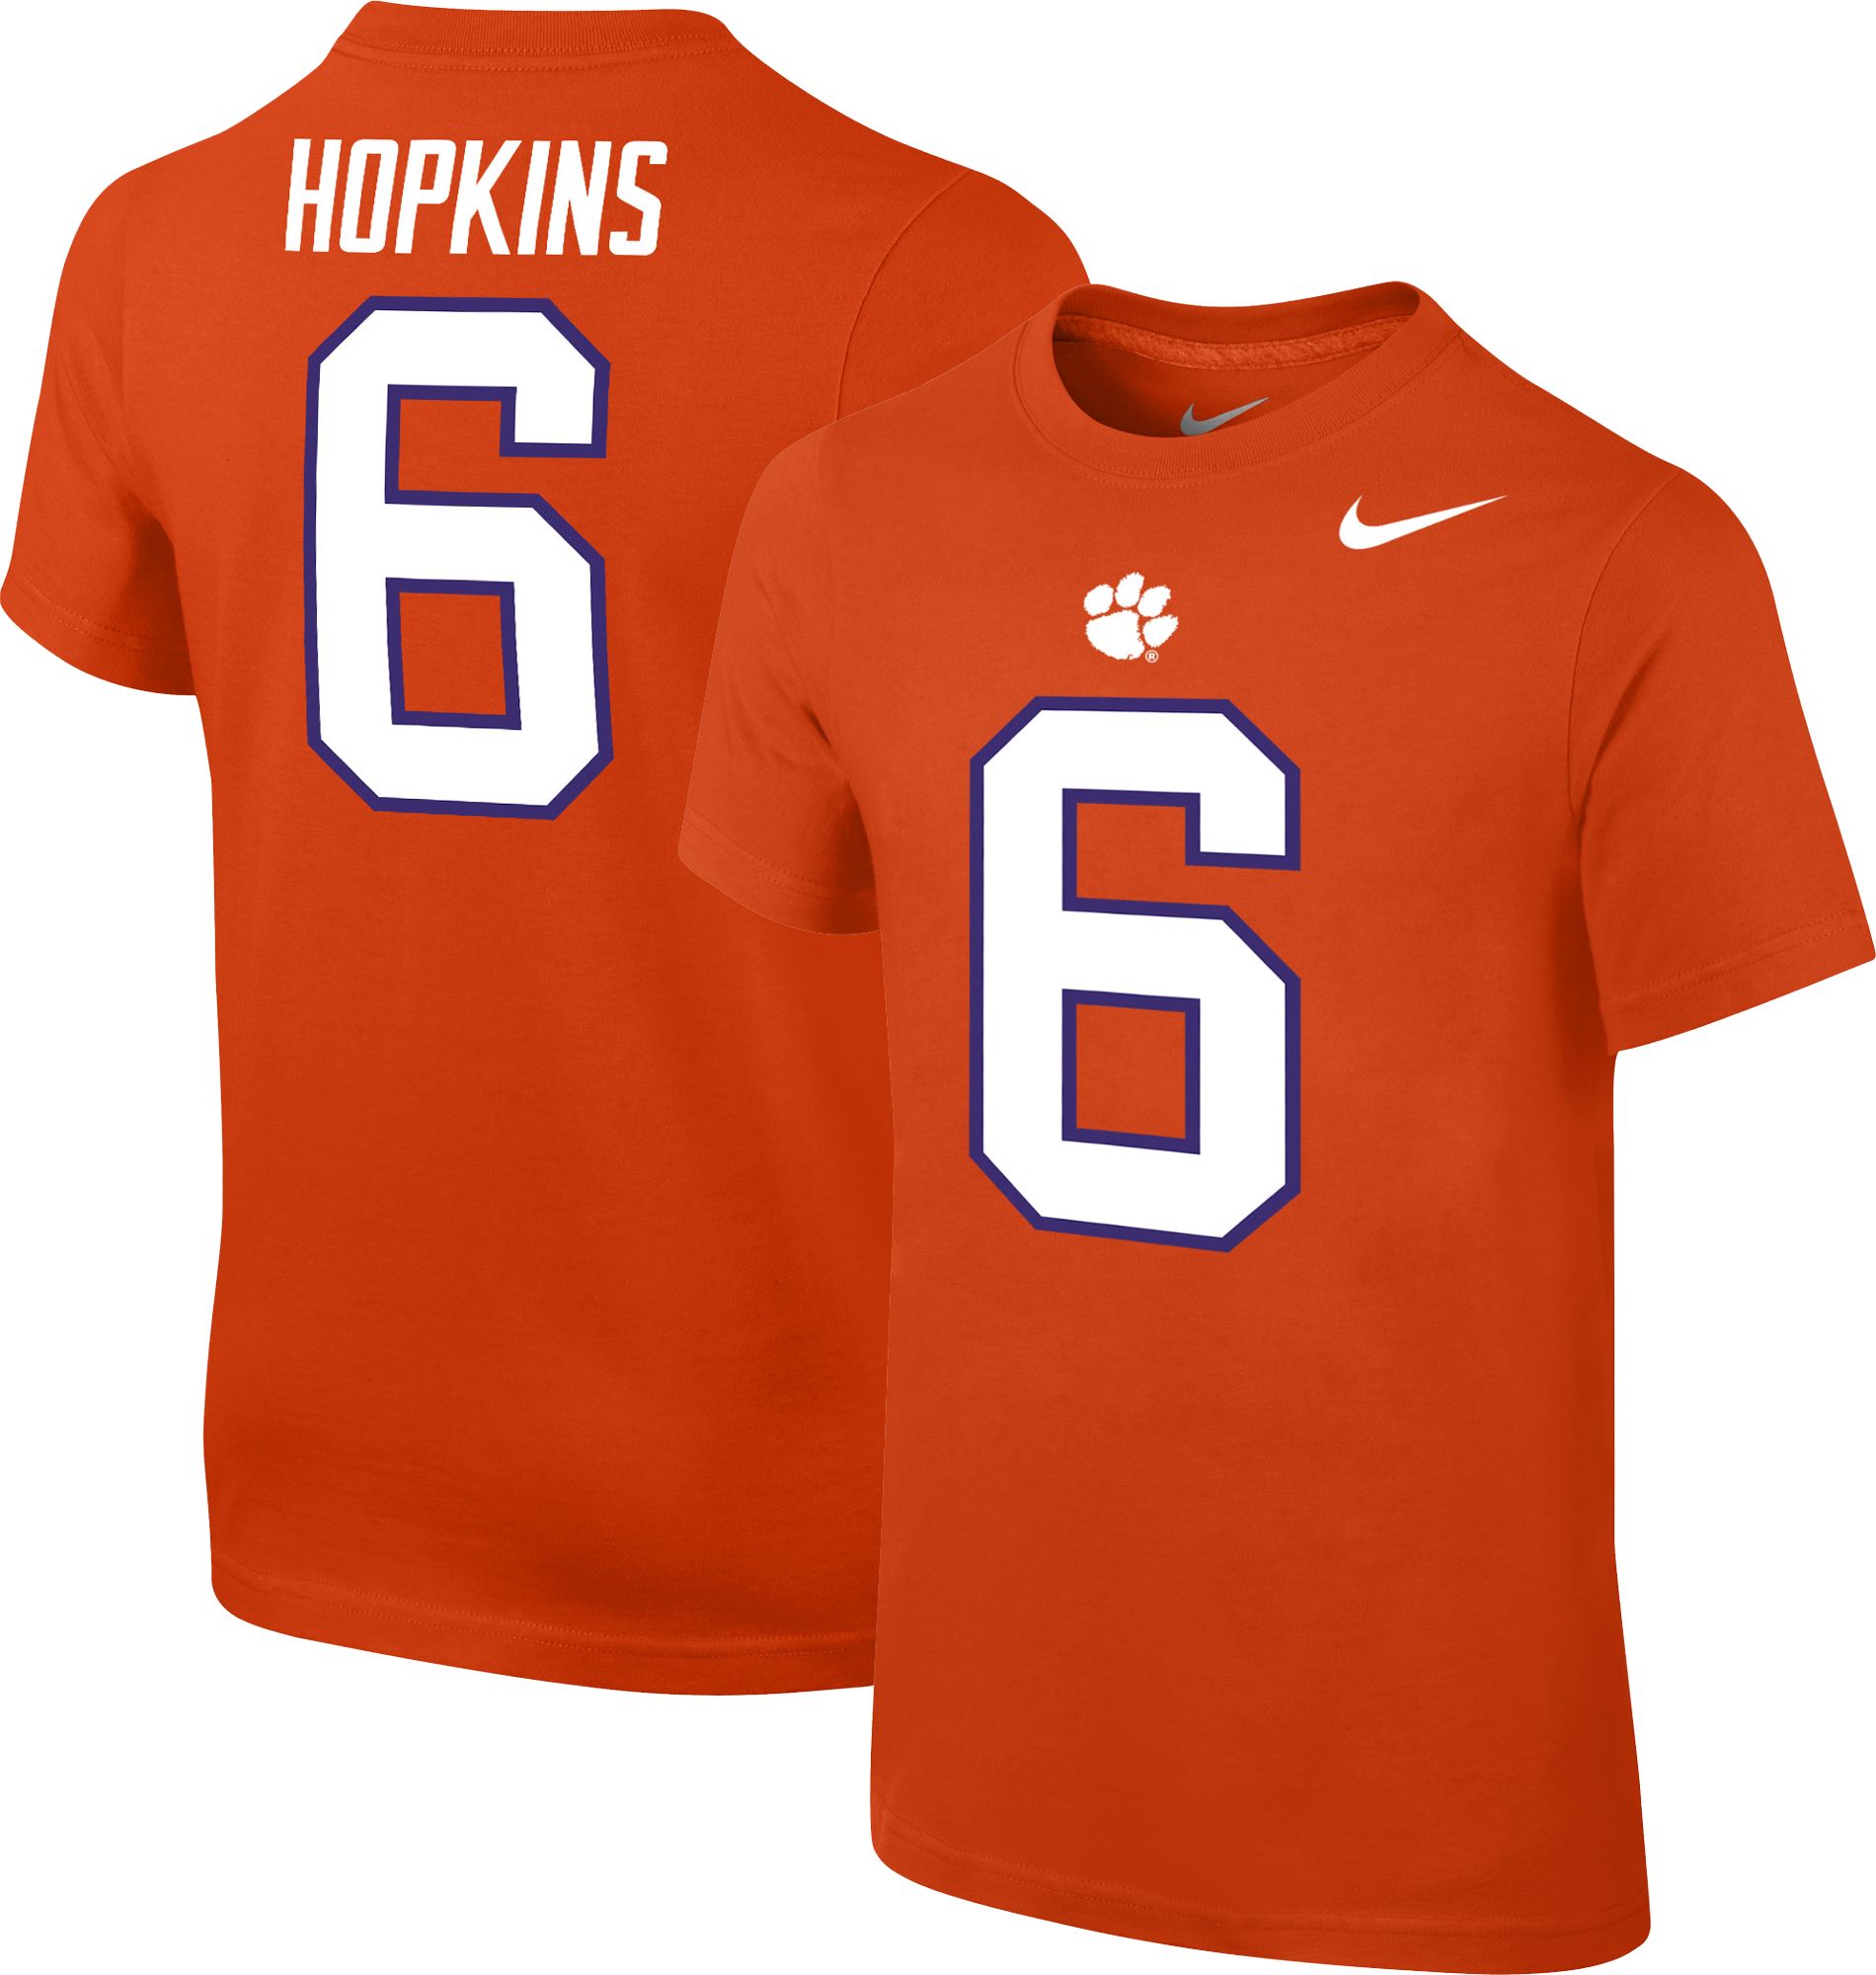 hopkins clemson jersey